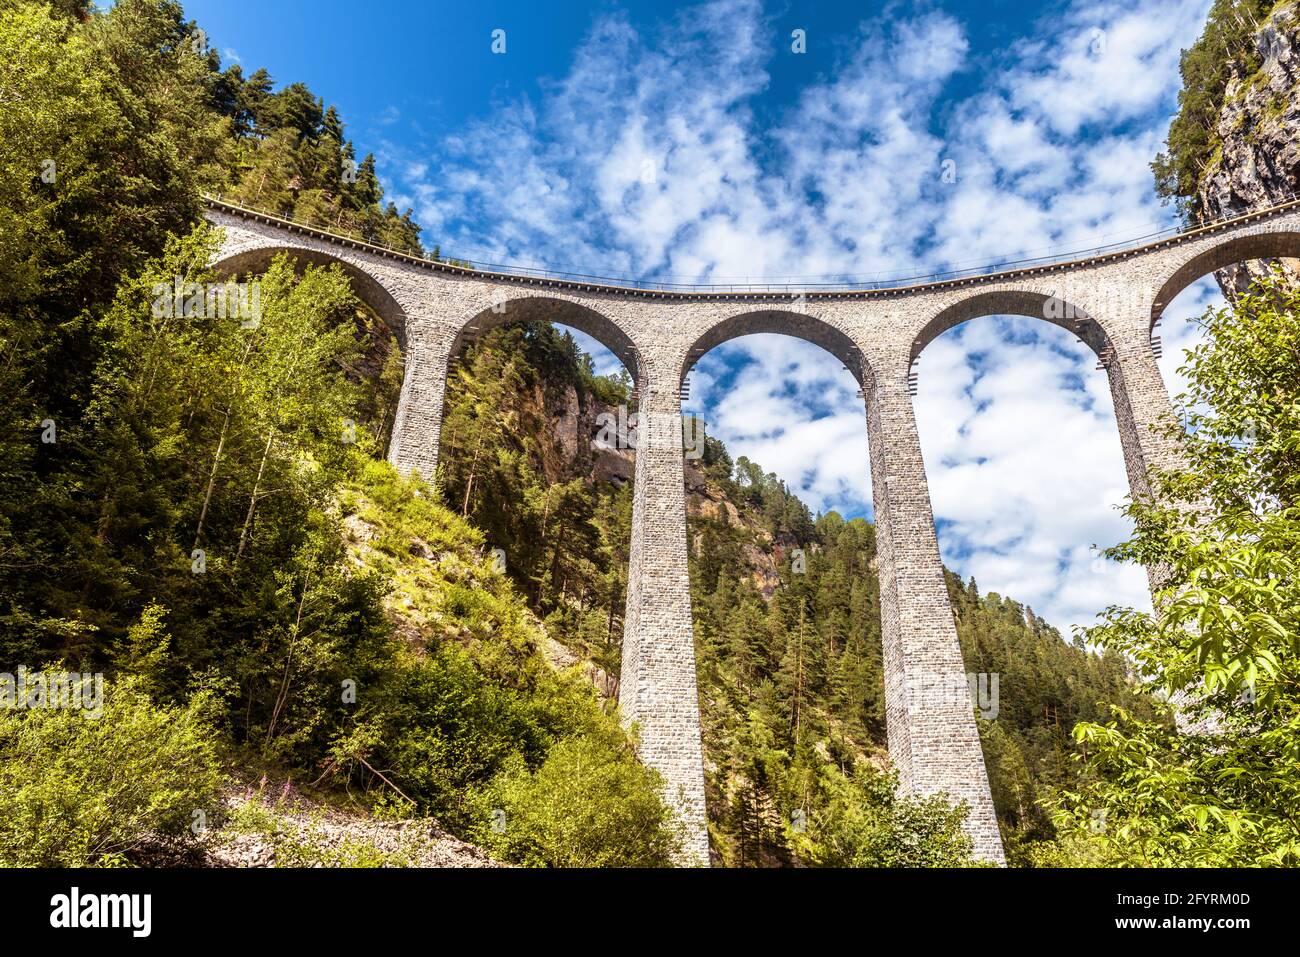 Landwasserviadukt in den Schweizer Alpen, Panorama der Eisenbahnbrücke in der Schweiz. Dieser Ort ist ein berühmtes Wahrzeichen der Alpen. Berglandschaft mit erstaunlicher ra Stockfoto